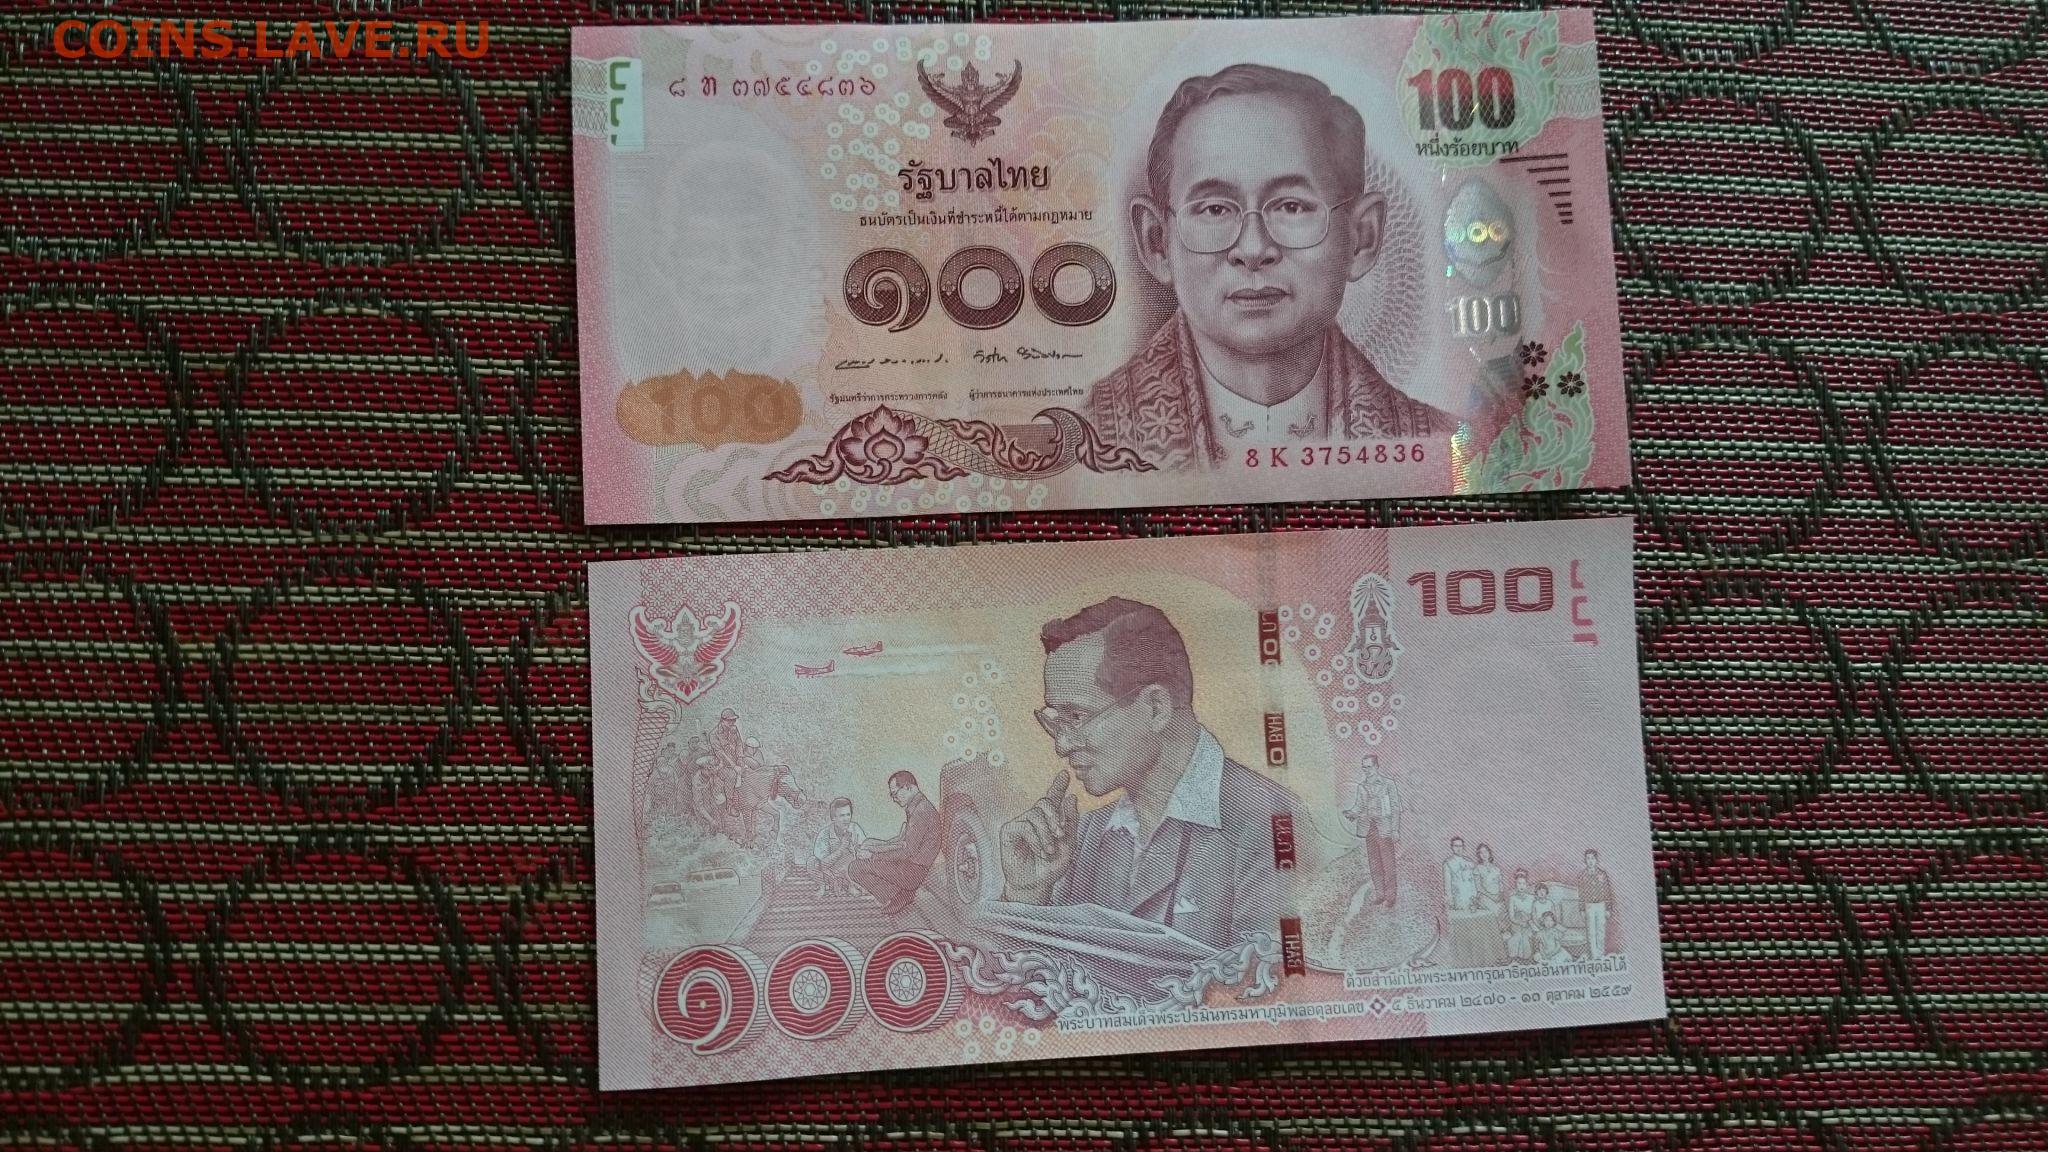 60 бат в рублях. Купюра 1000 бат рама 9. Рама 9 1000 бат. Банкноты Тайланда 100 бат. Купюра 100 Тайланд.